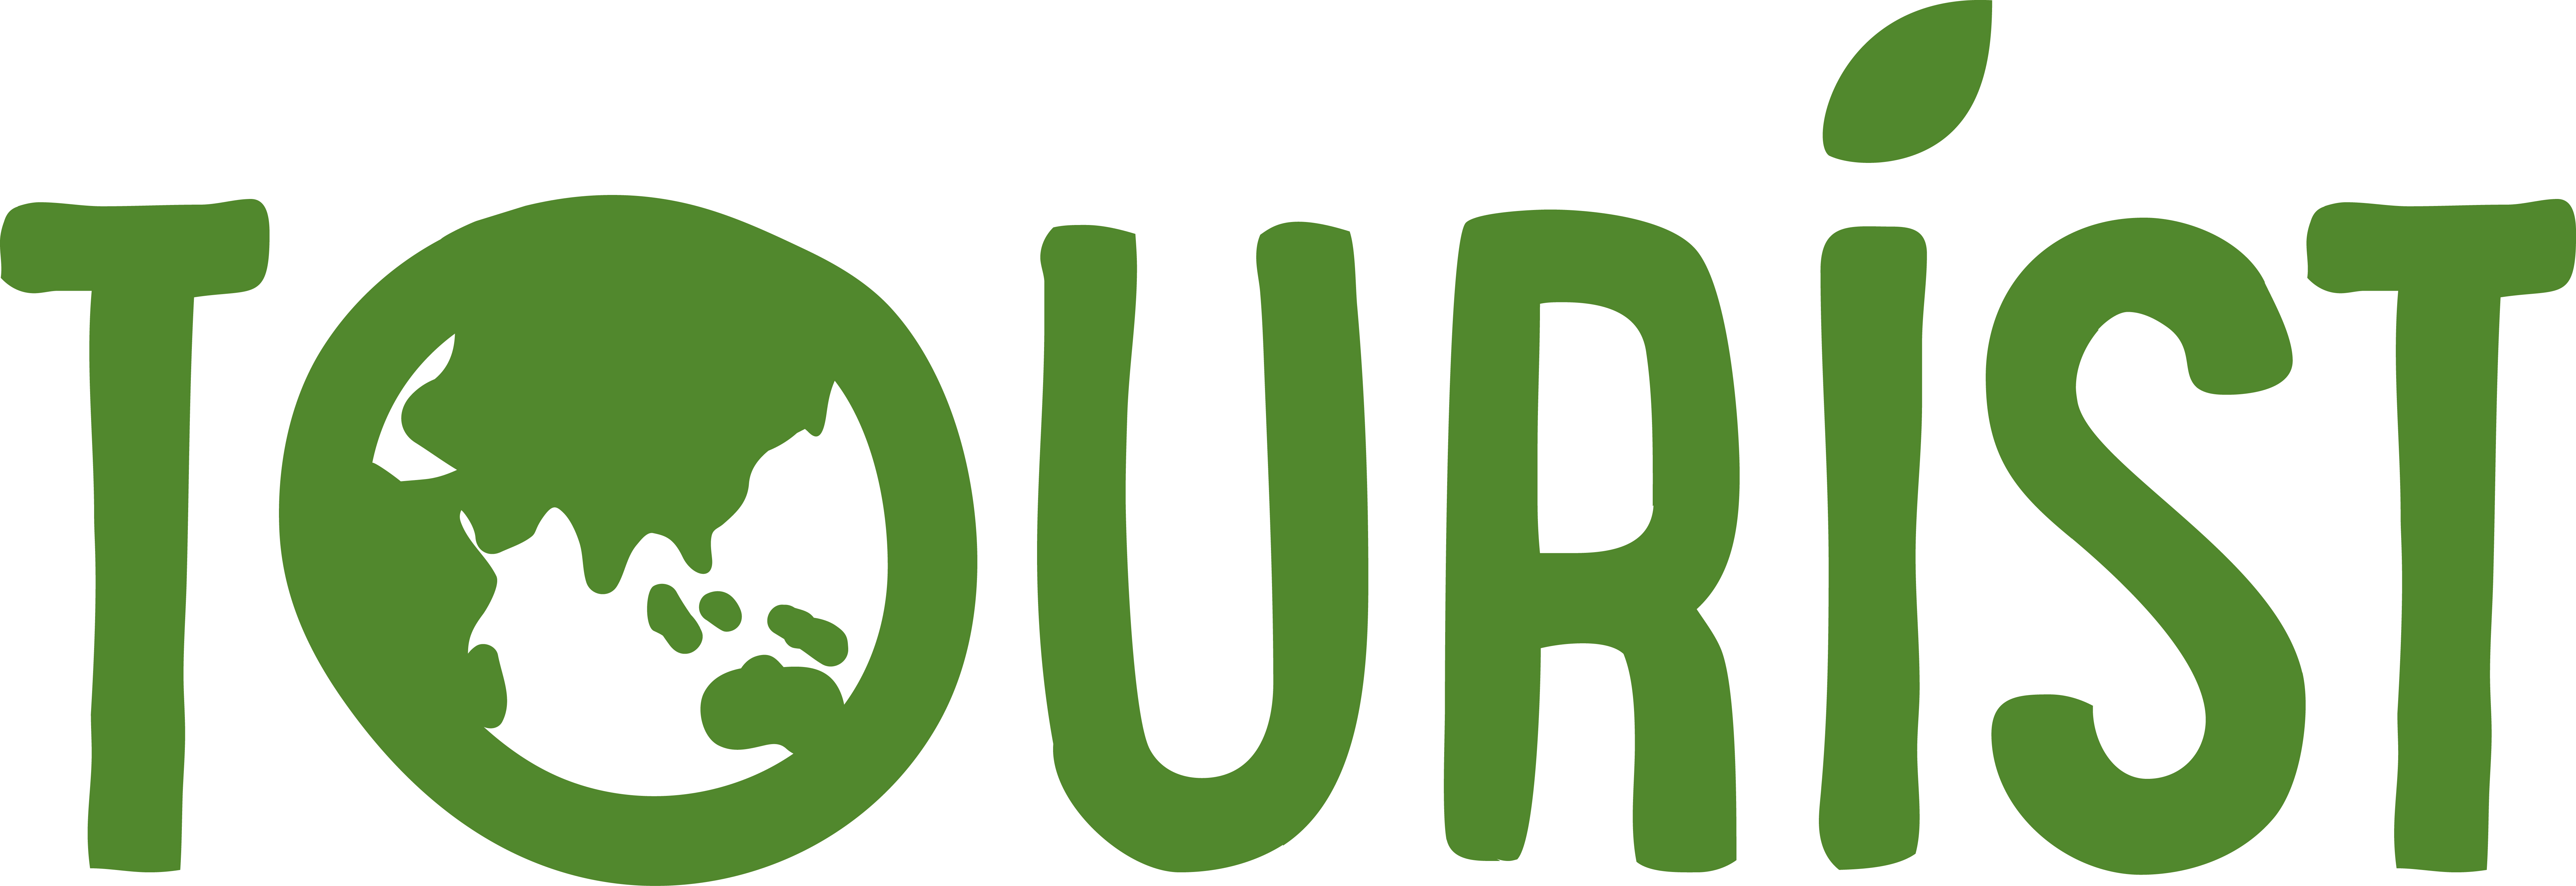 tourist logo